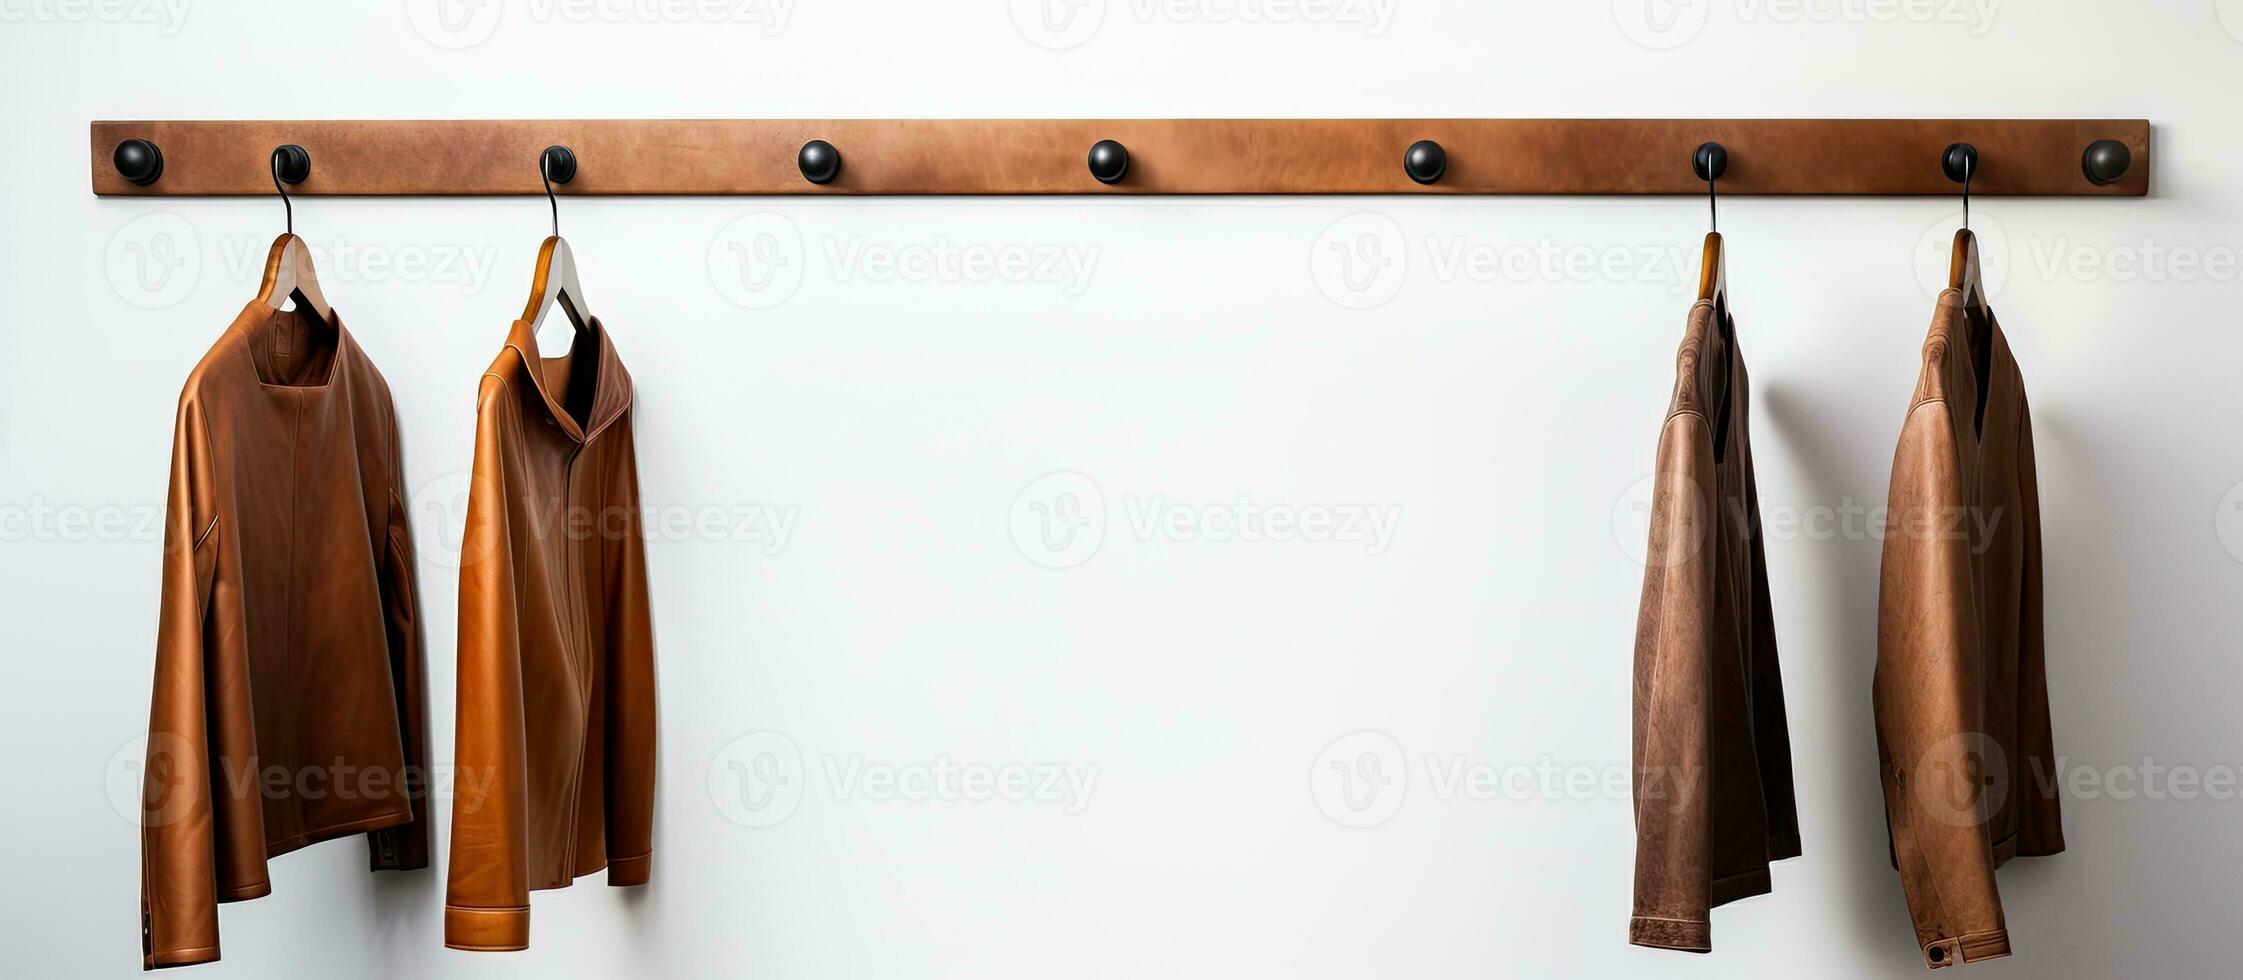 Foto av en täcka kuggstång med tre rockar hängande på Det, tillhandahålla en funktionell och organiserad lösning för lagring ytterkläder med kopia Plats